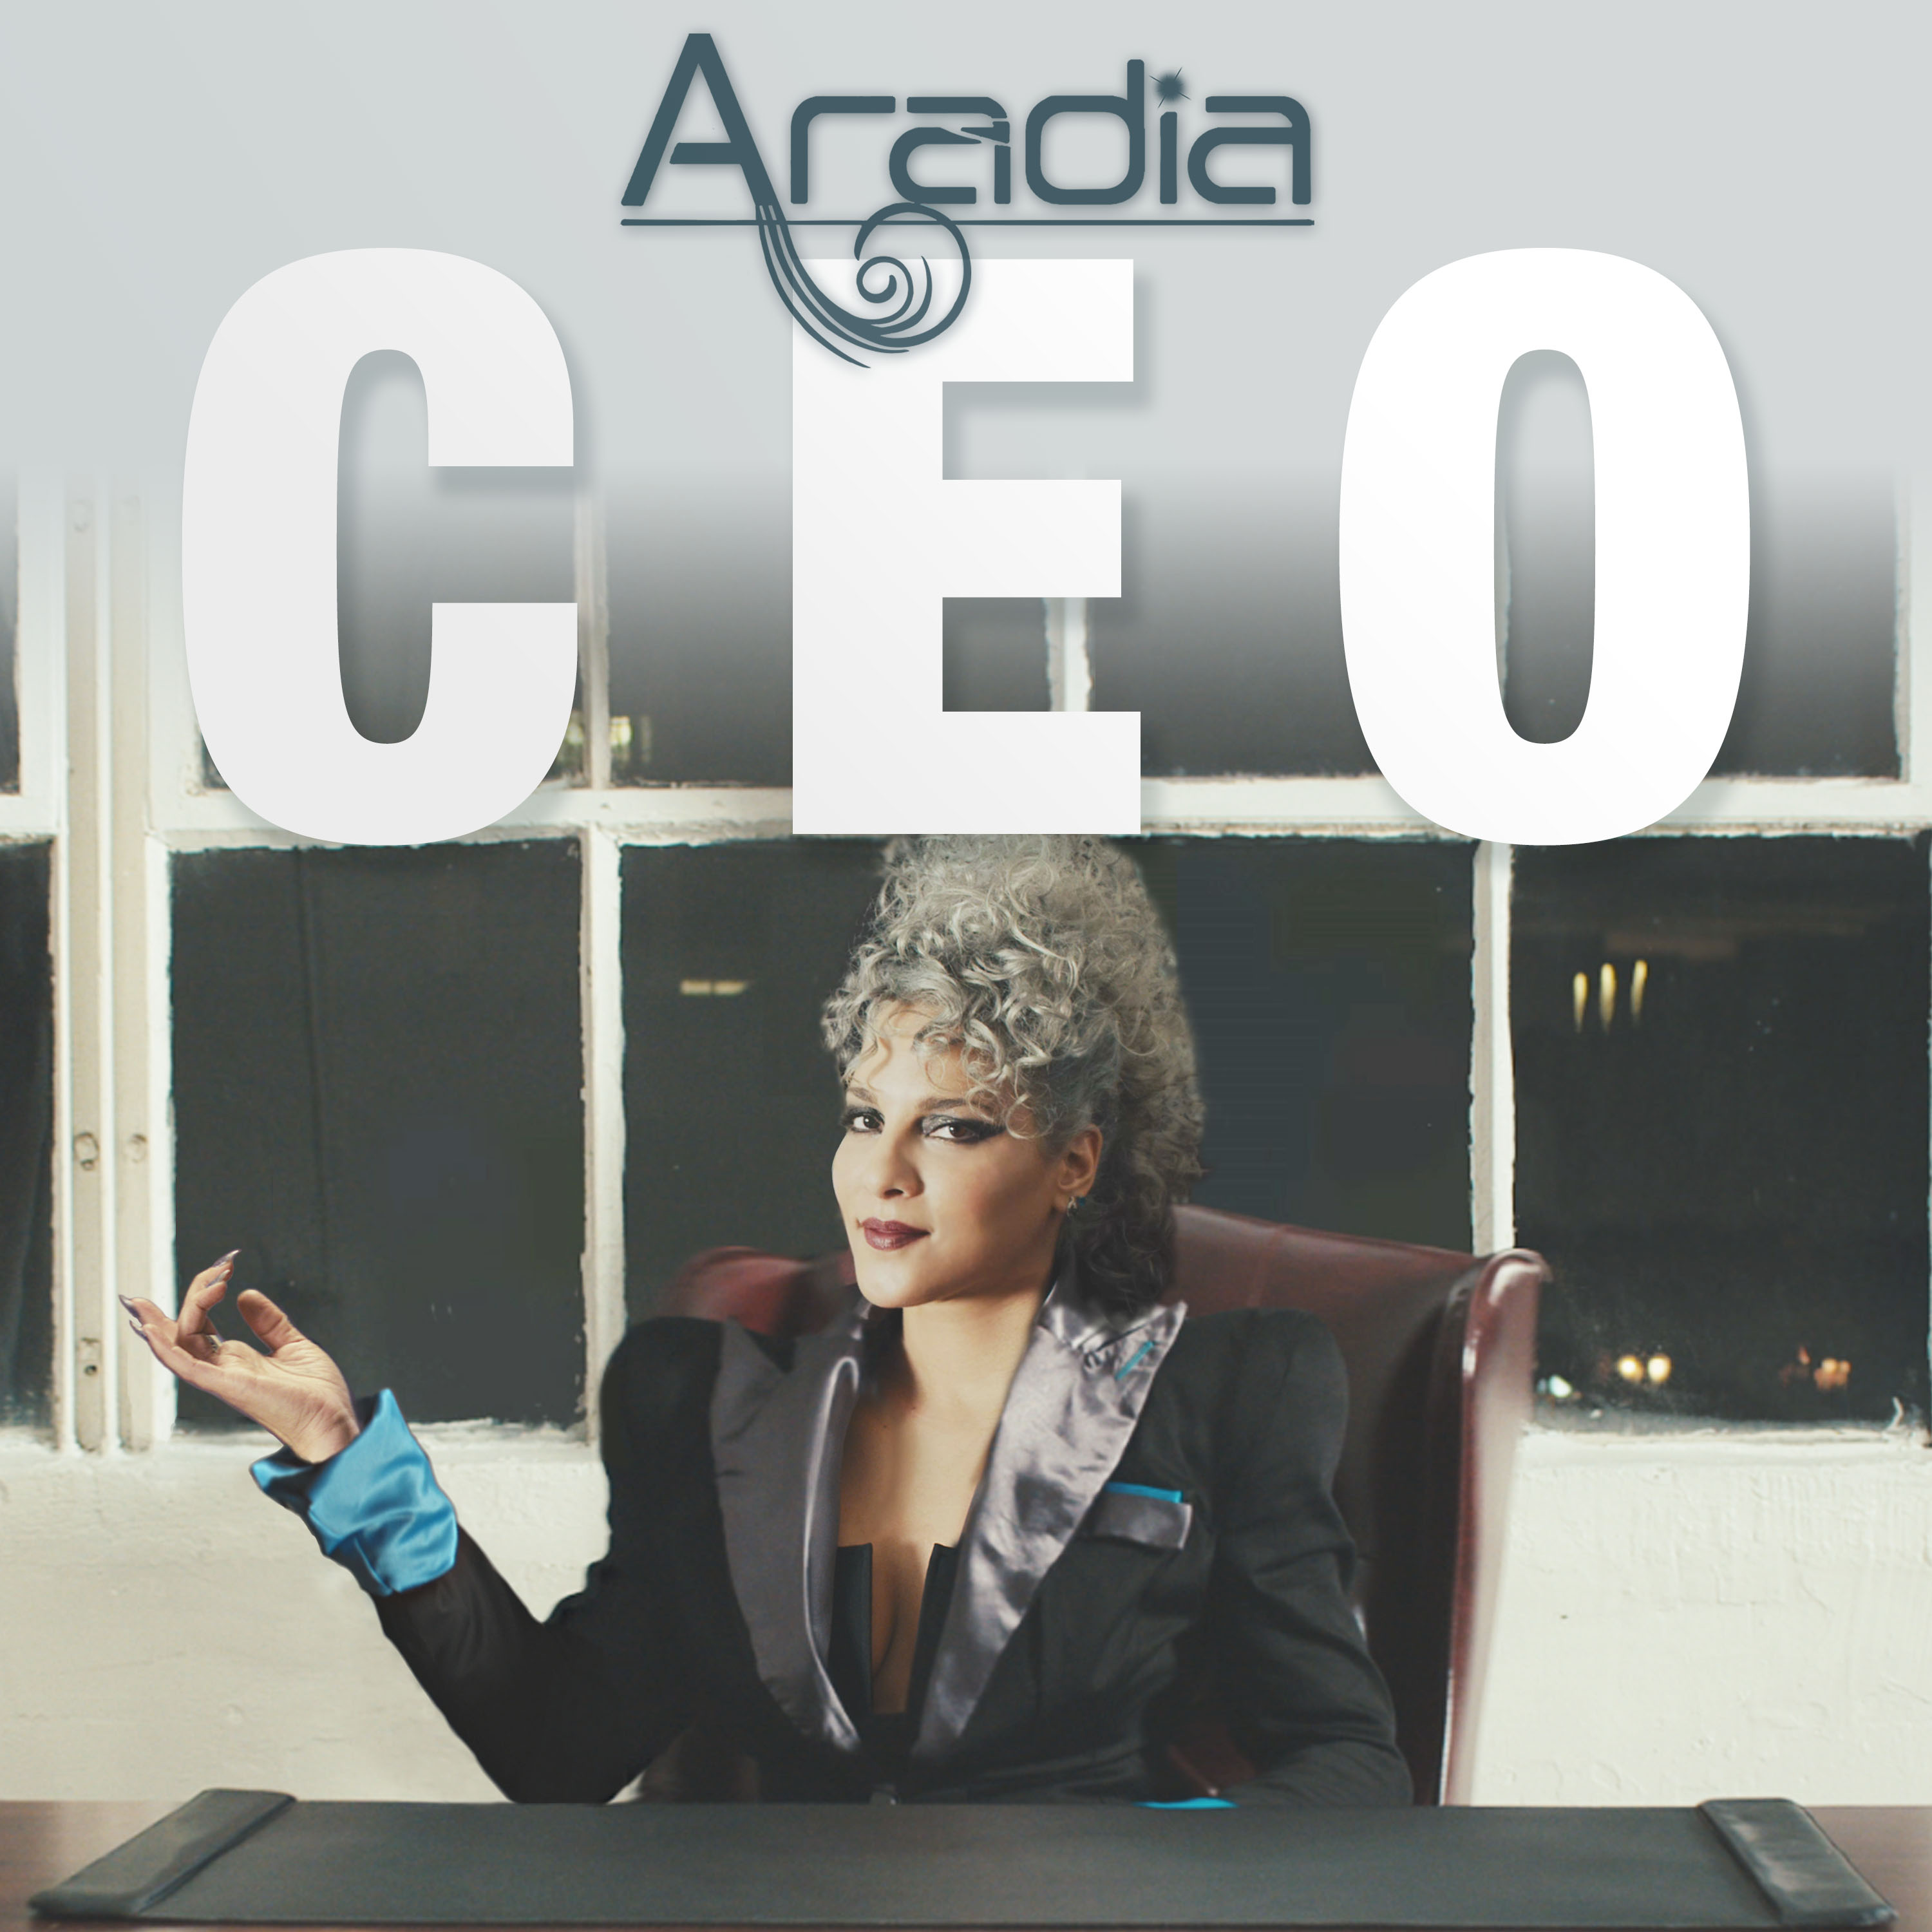 Aradia's Single 'CEO'